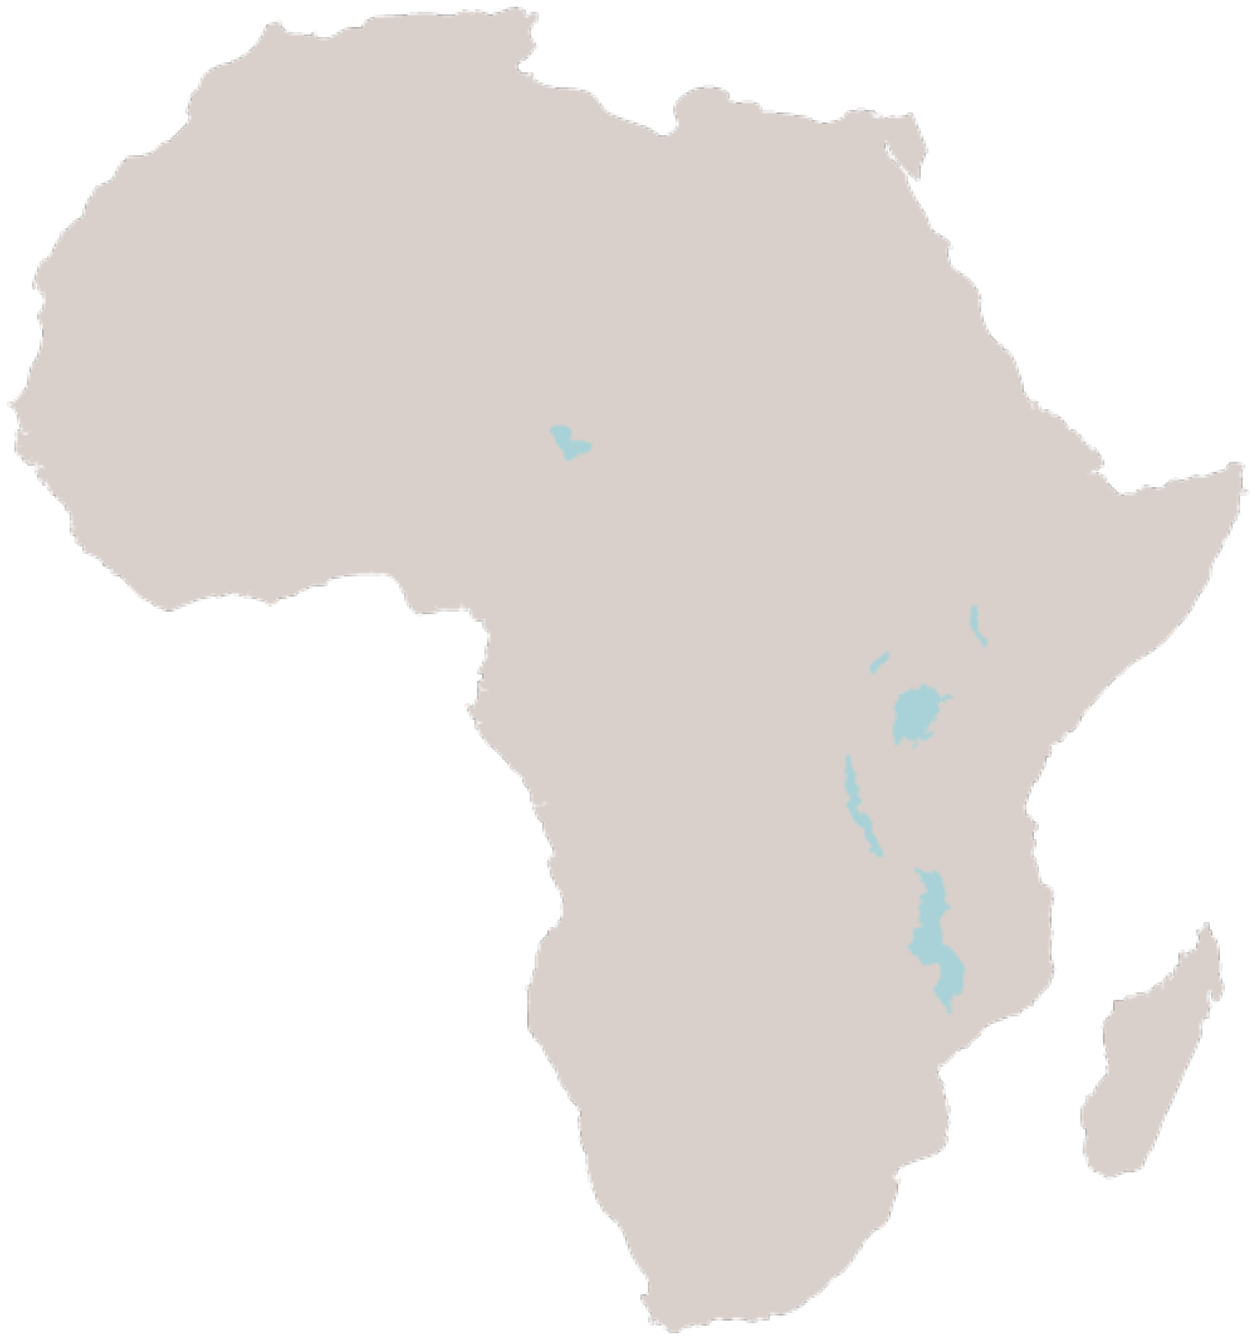 Mappa dellAfrica PNG Immagine di alta qualità